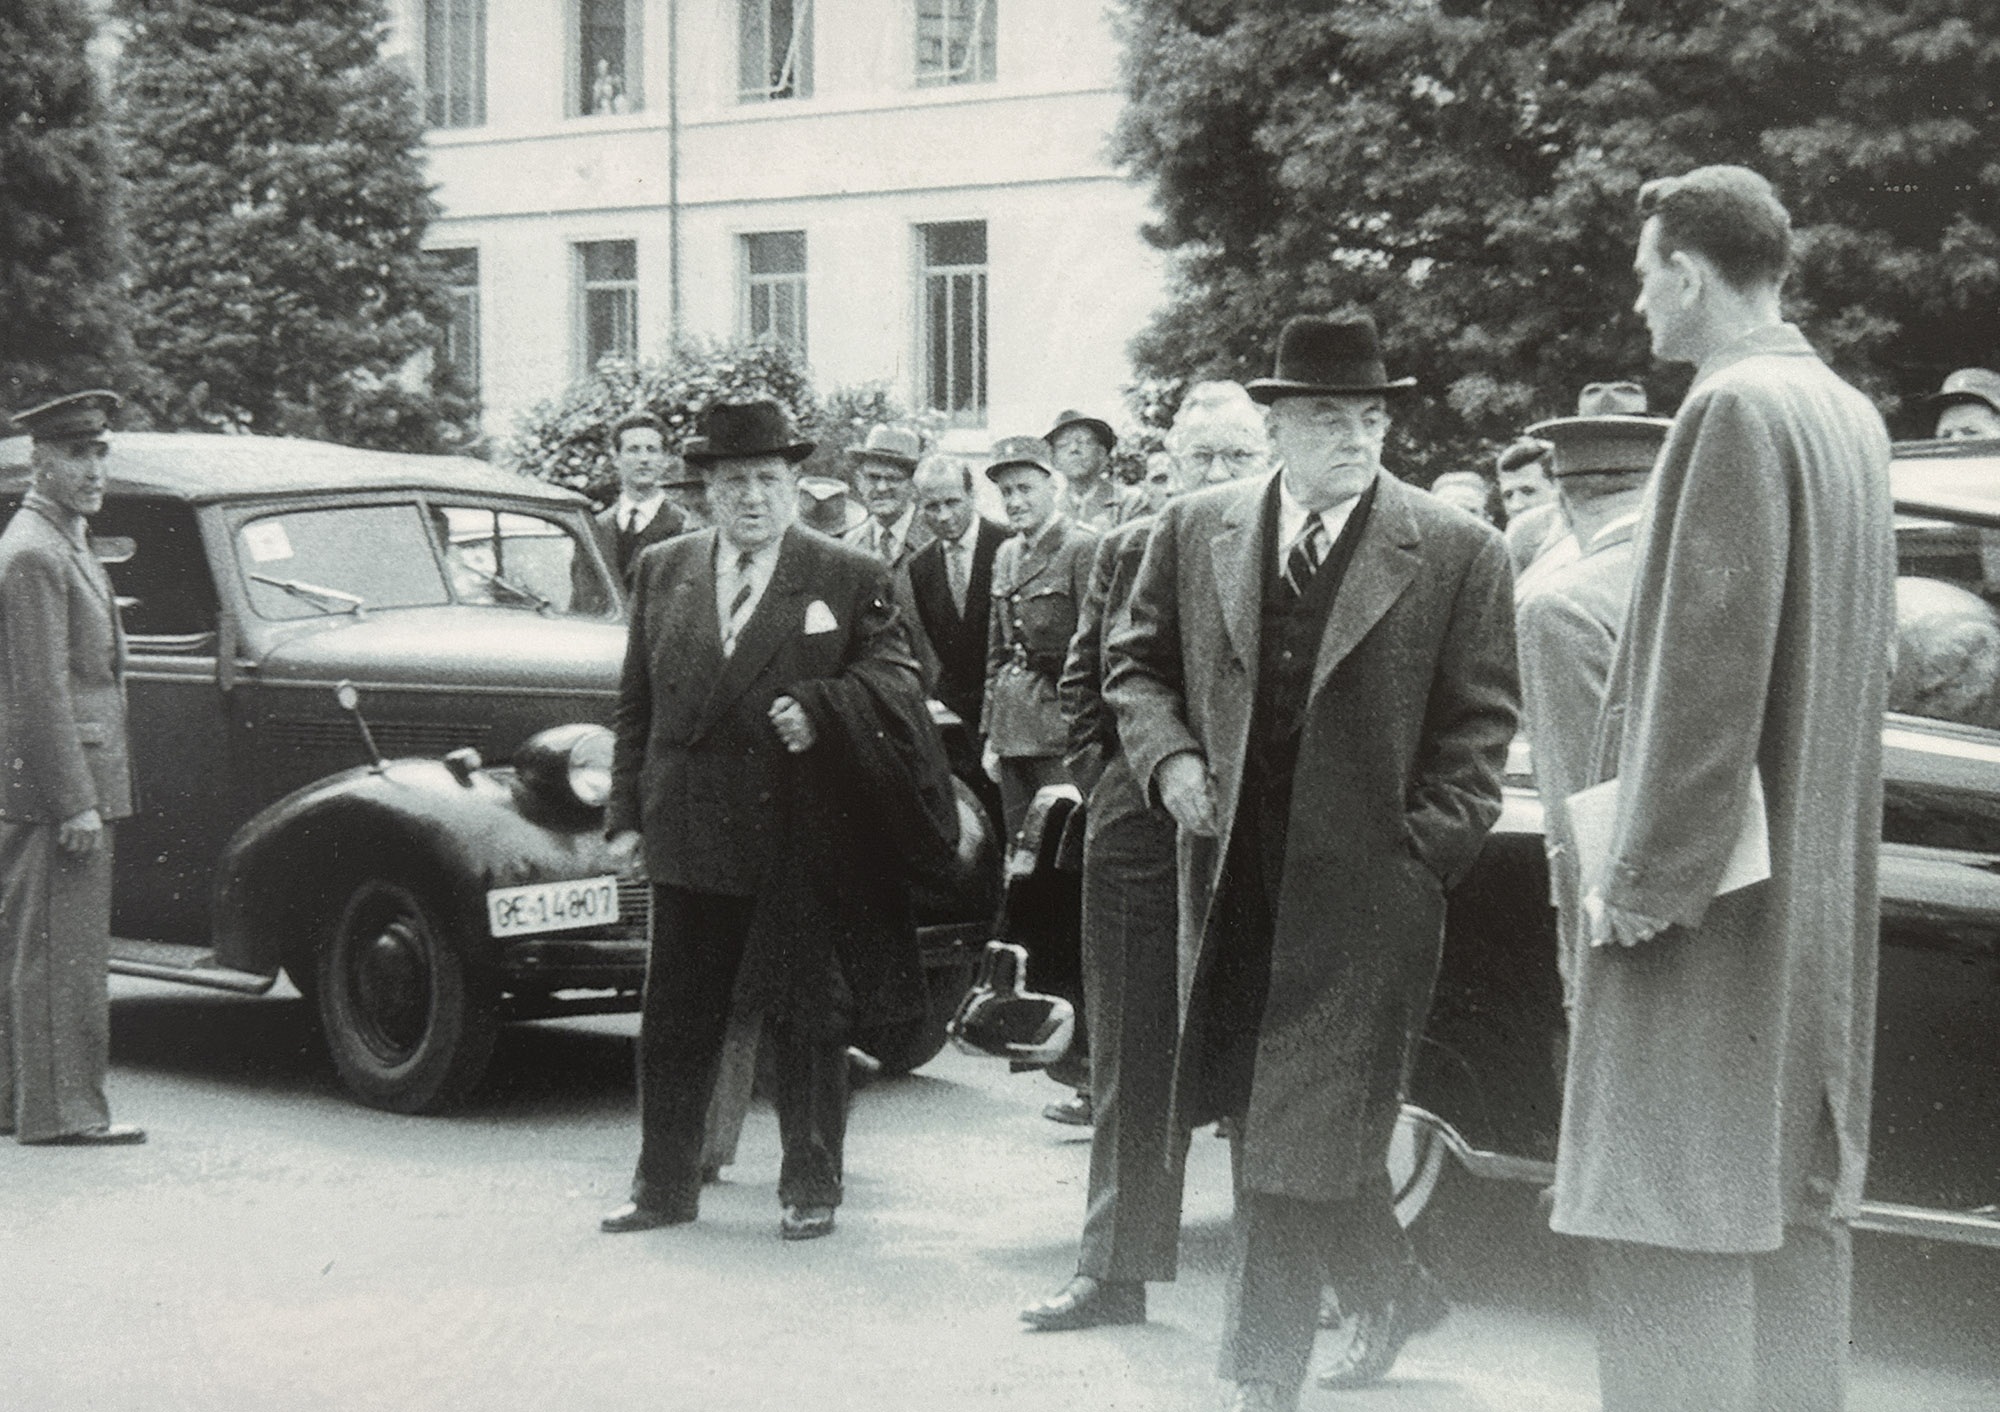 Ảnh tư liệu quý ít được biết về Hội nghị Geneve 1954 - 7